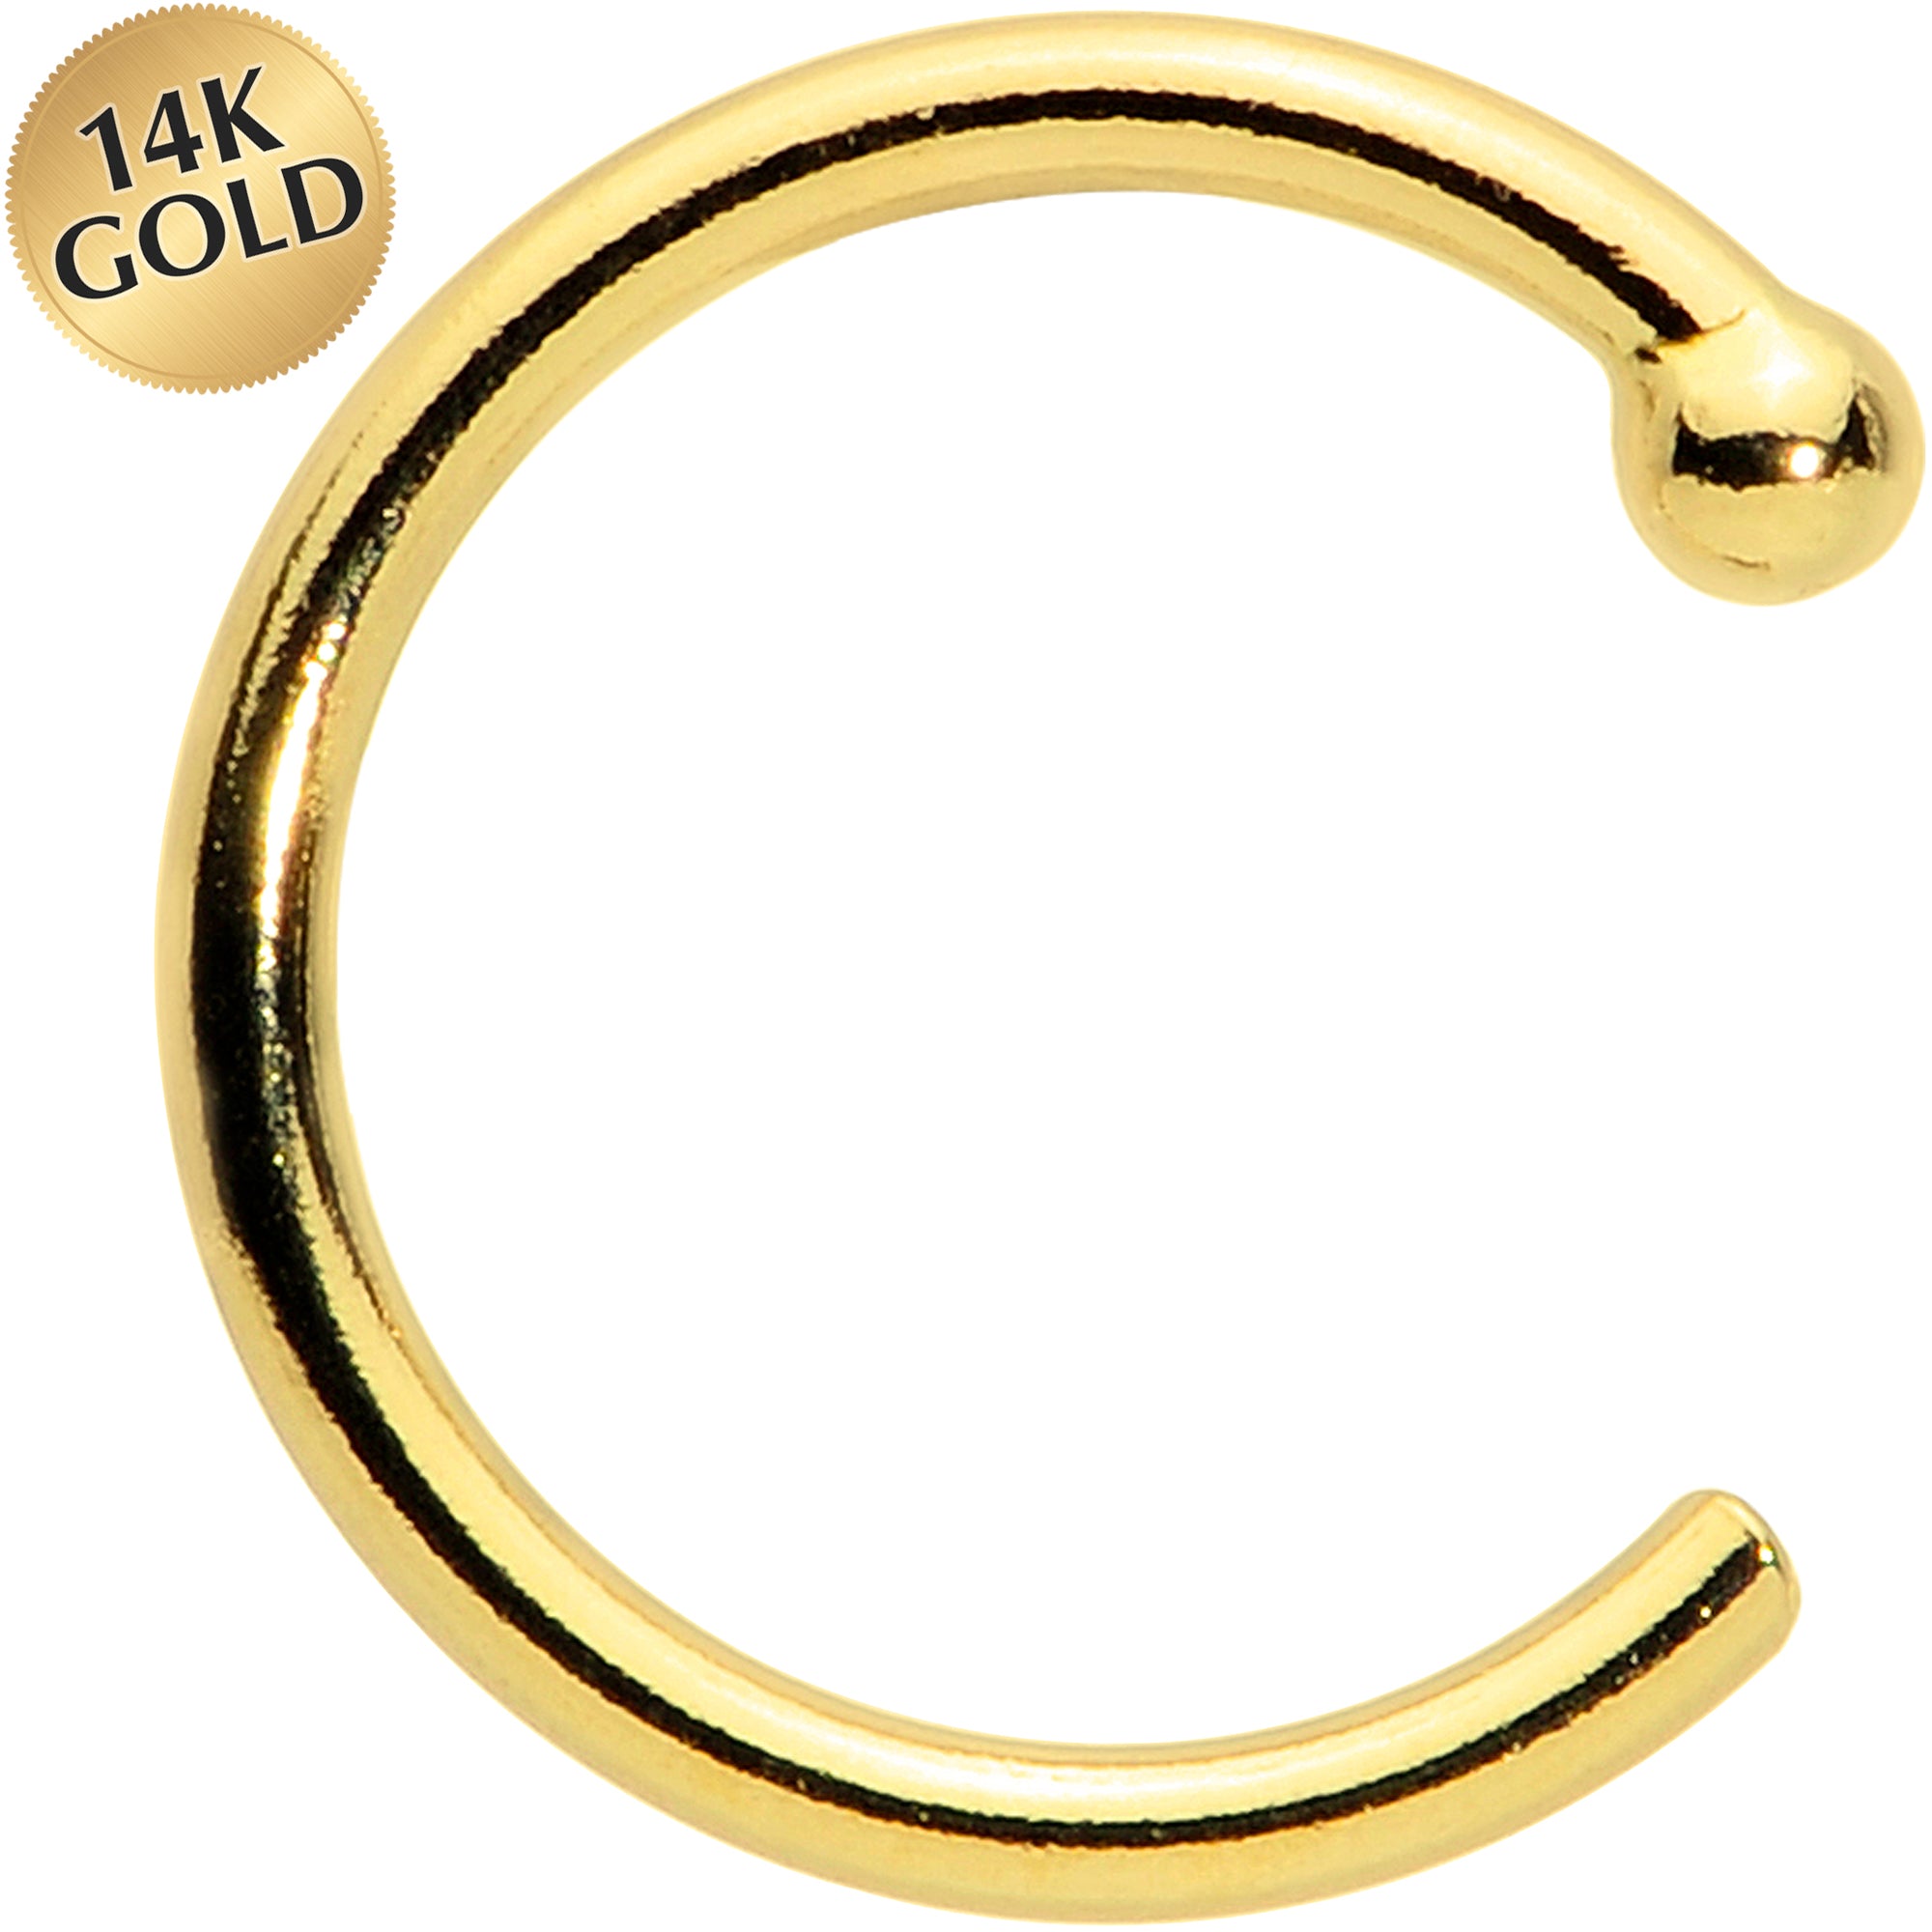 TianluNose Ring Hoop, 316L Medical Steel Hinge Nose Ring Spacer Spiral  Cartilage Hoop Earrings Body Piercing Jewelry 8mm Diameter, Gold 1pc -  Walmart.com